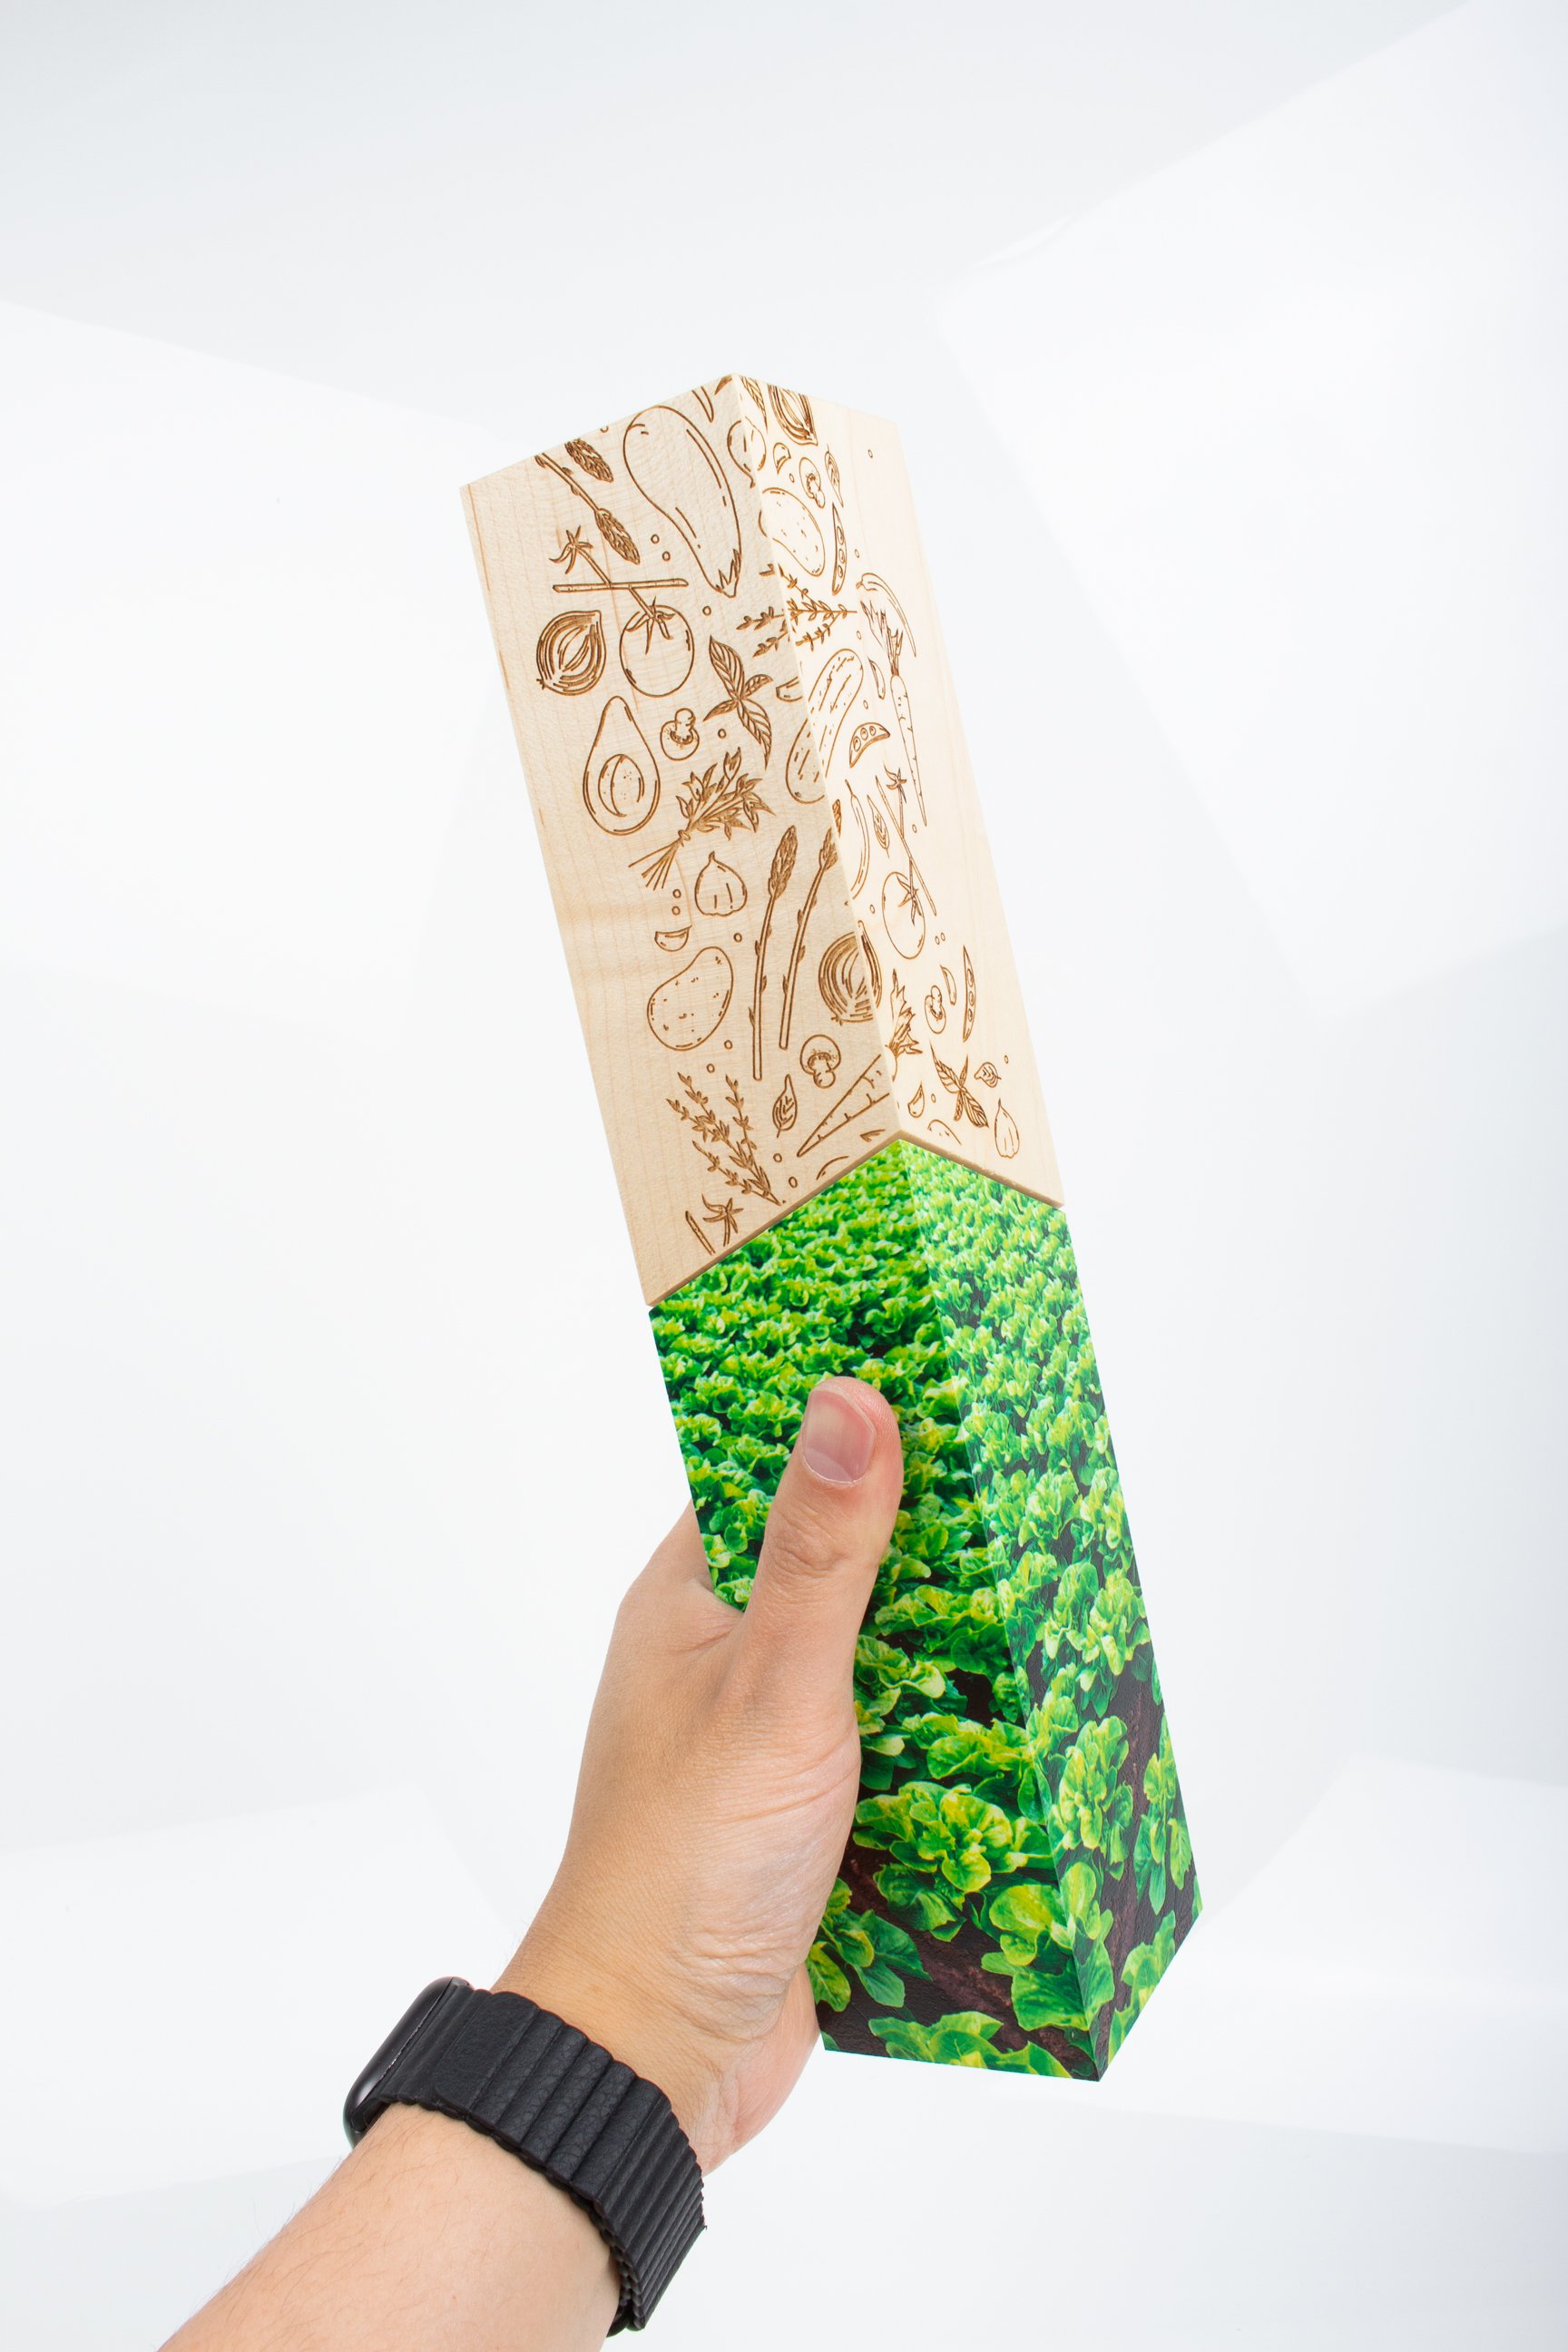 sysco produce awards half wood half acrylic 